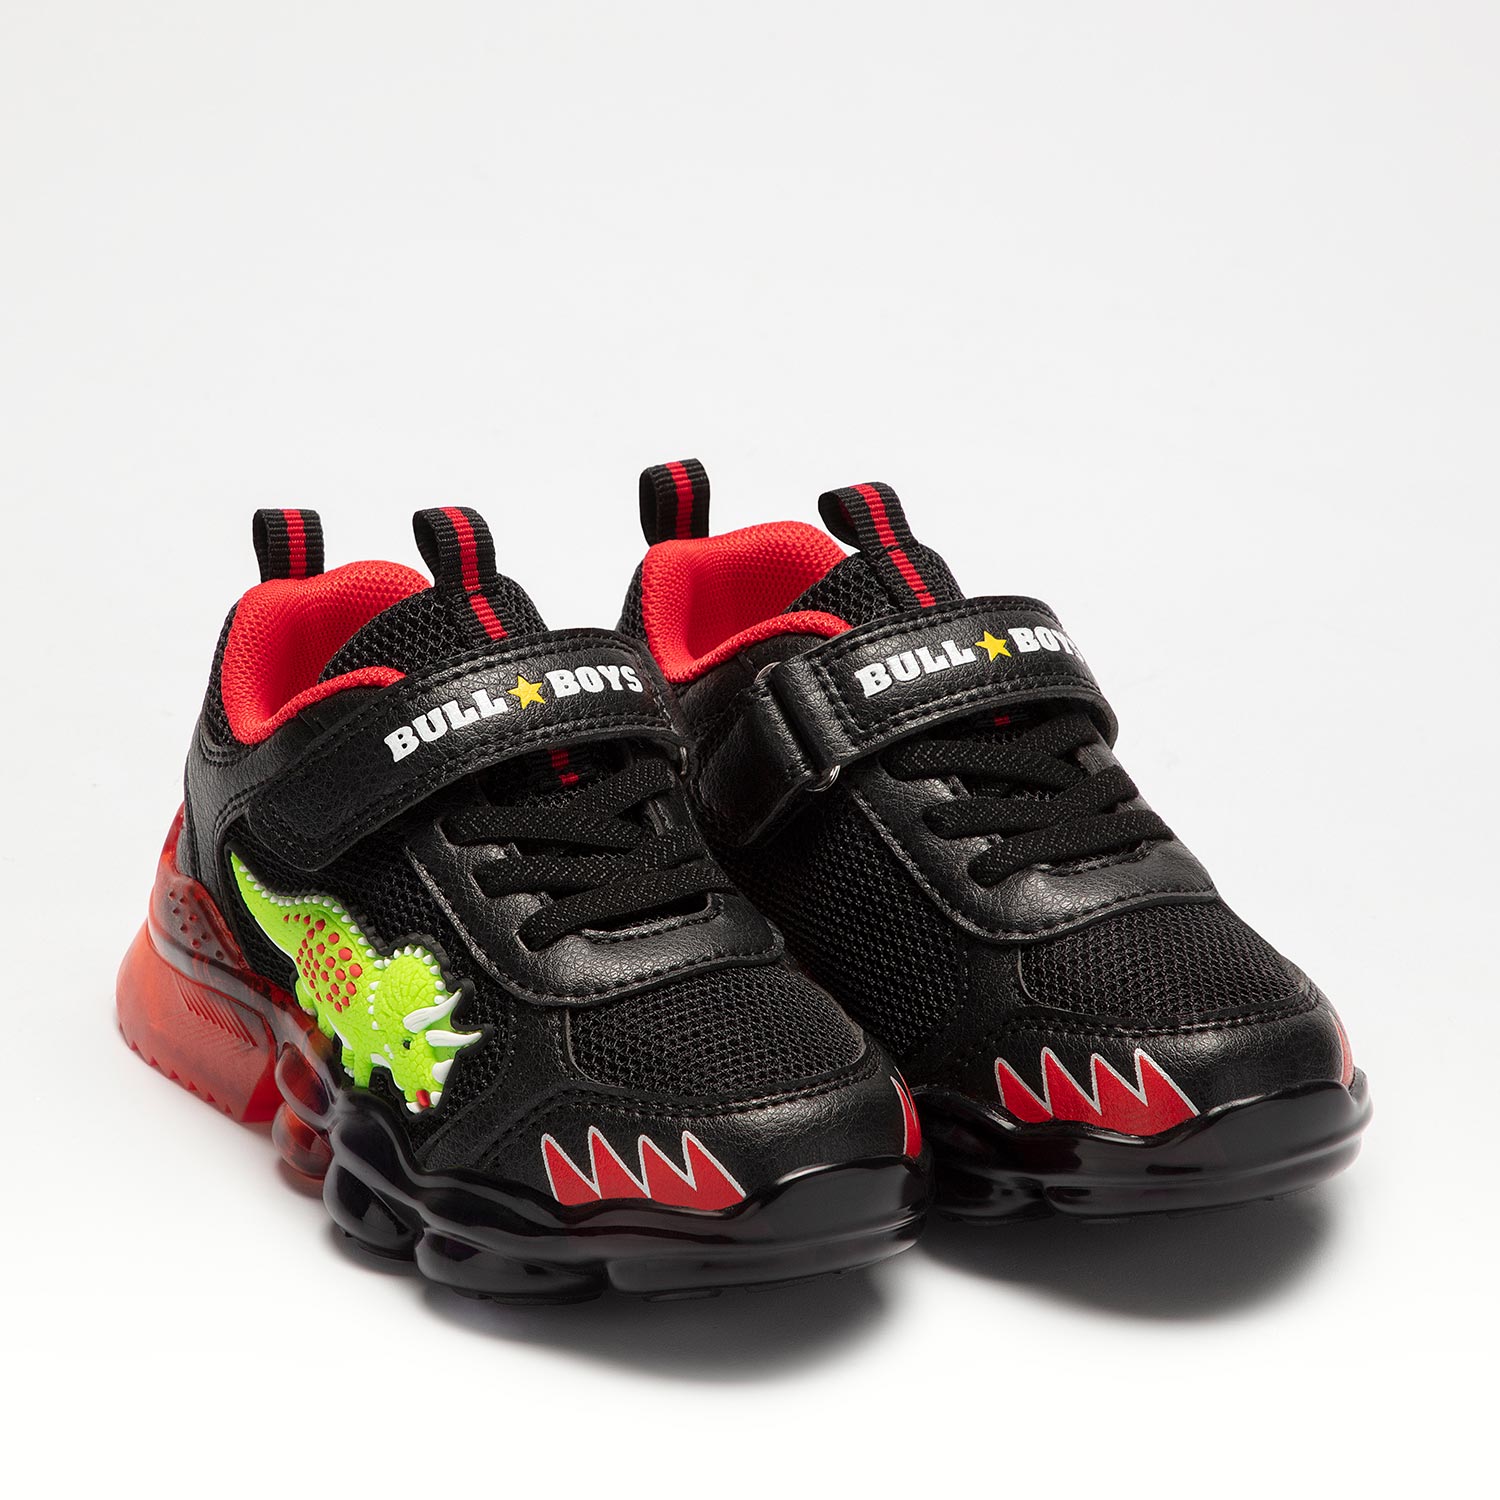 Αθλητικό-sneaker για αγόρι με δεινόσαυρο Τρικεράτοπας φωτάκια Bull Boys DNAL2205 AB01